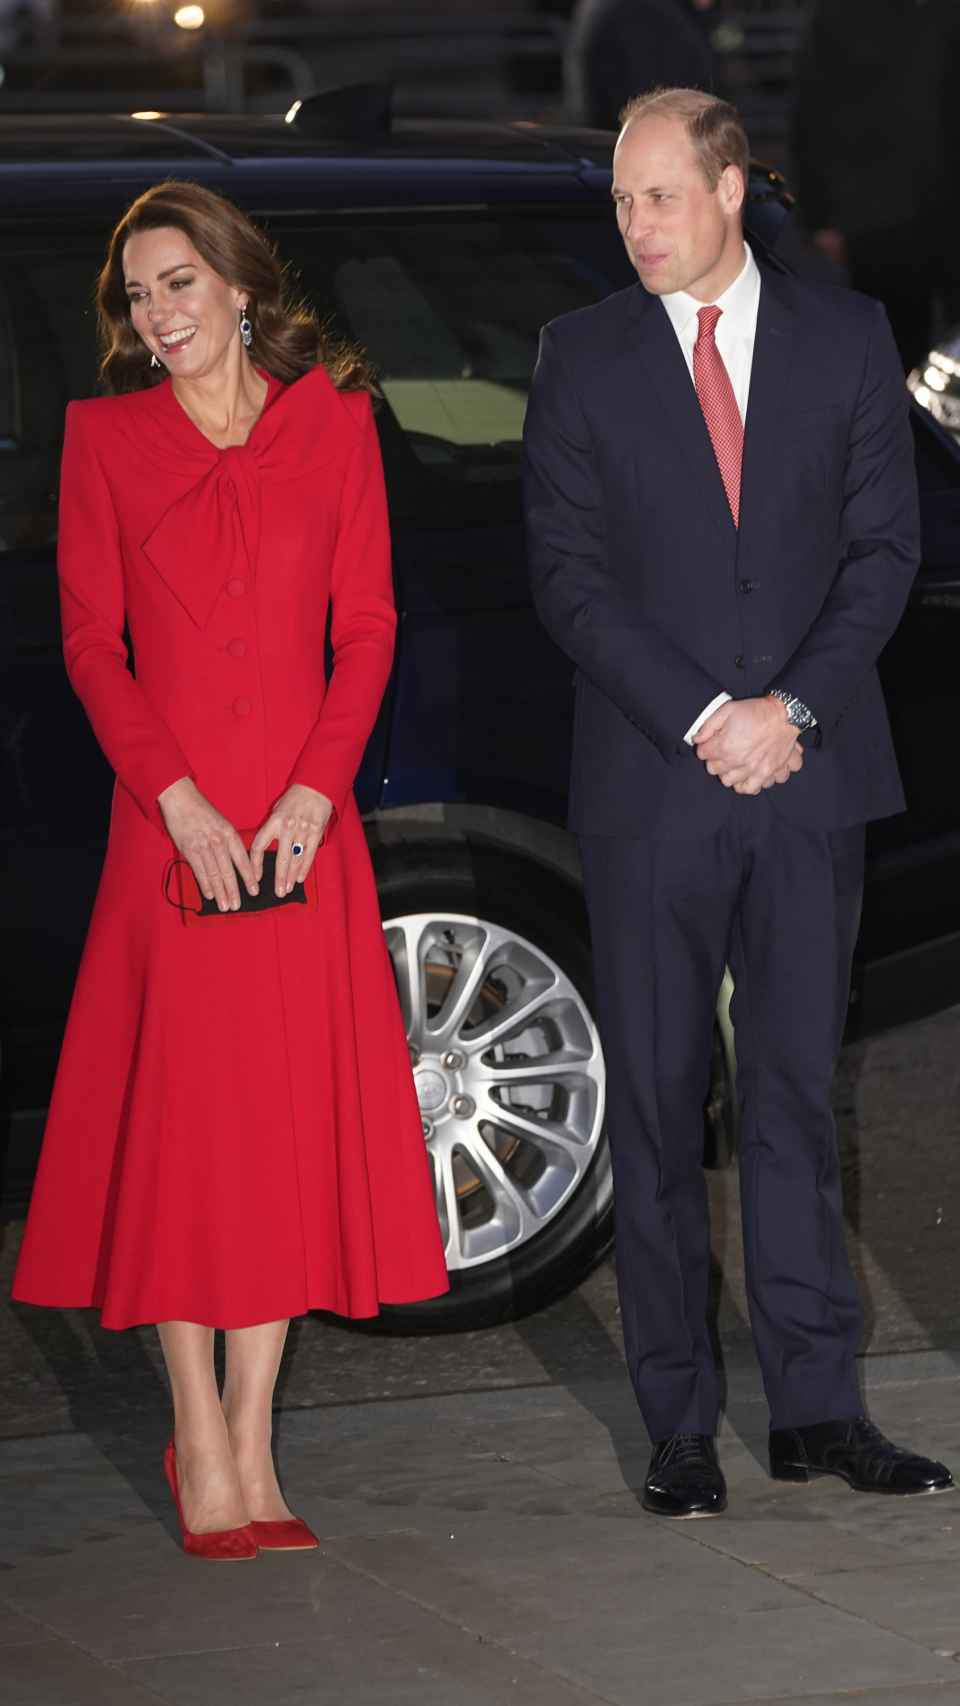 La duquesa de Cambridge, anfitriona del concierto, deslumbró con un espectacular estilo rojo.